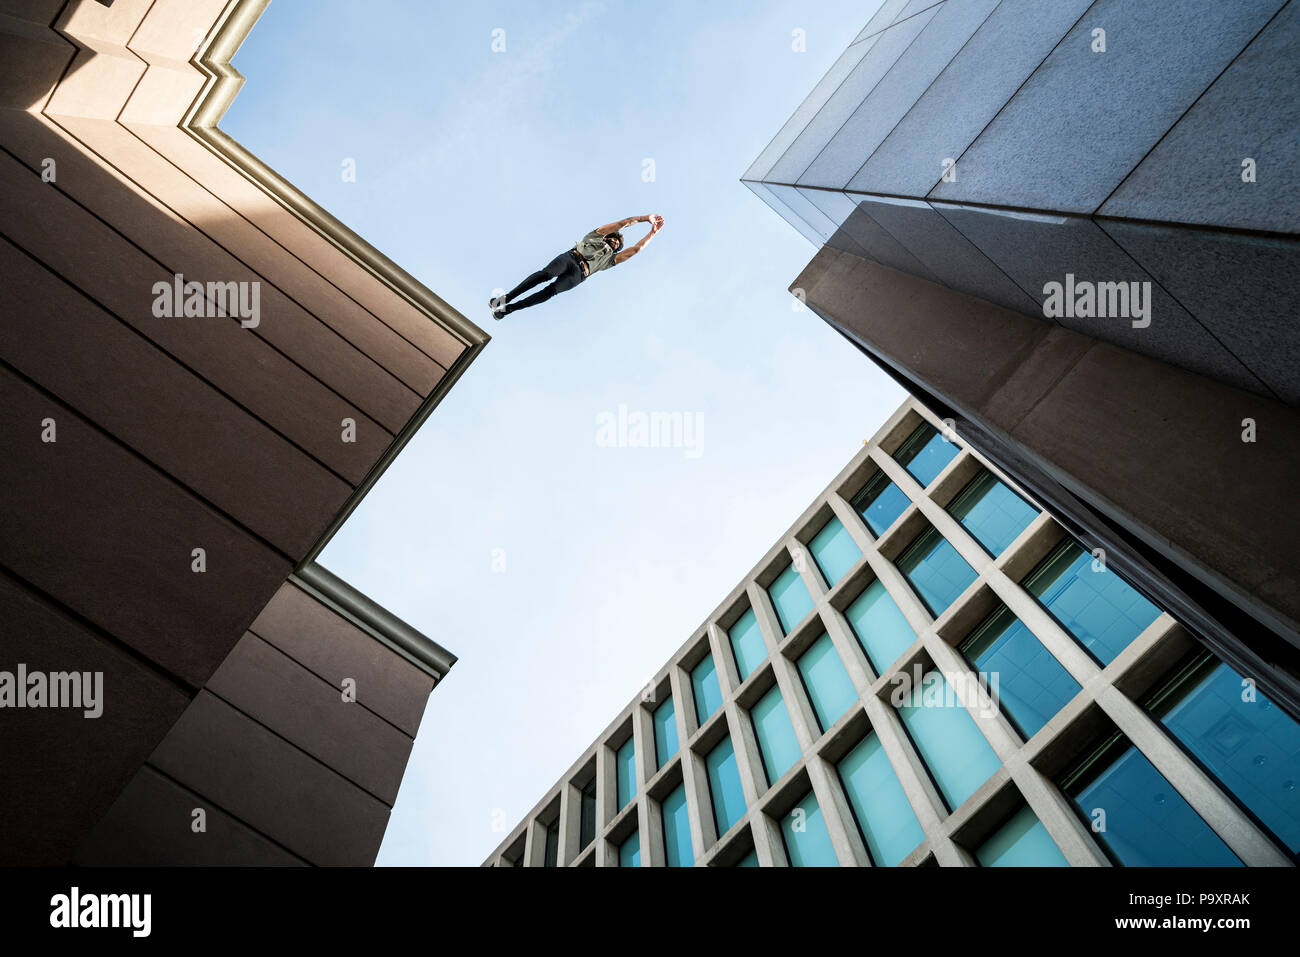 Vue de dessous du parkour masculin athlète sautant d'un toit à un autre Banque D'Images